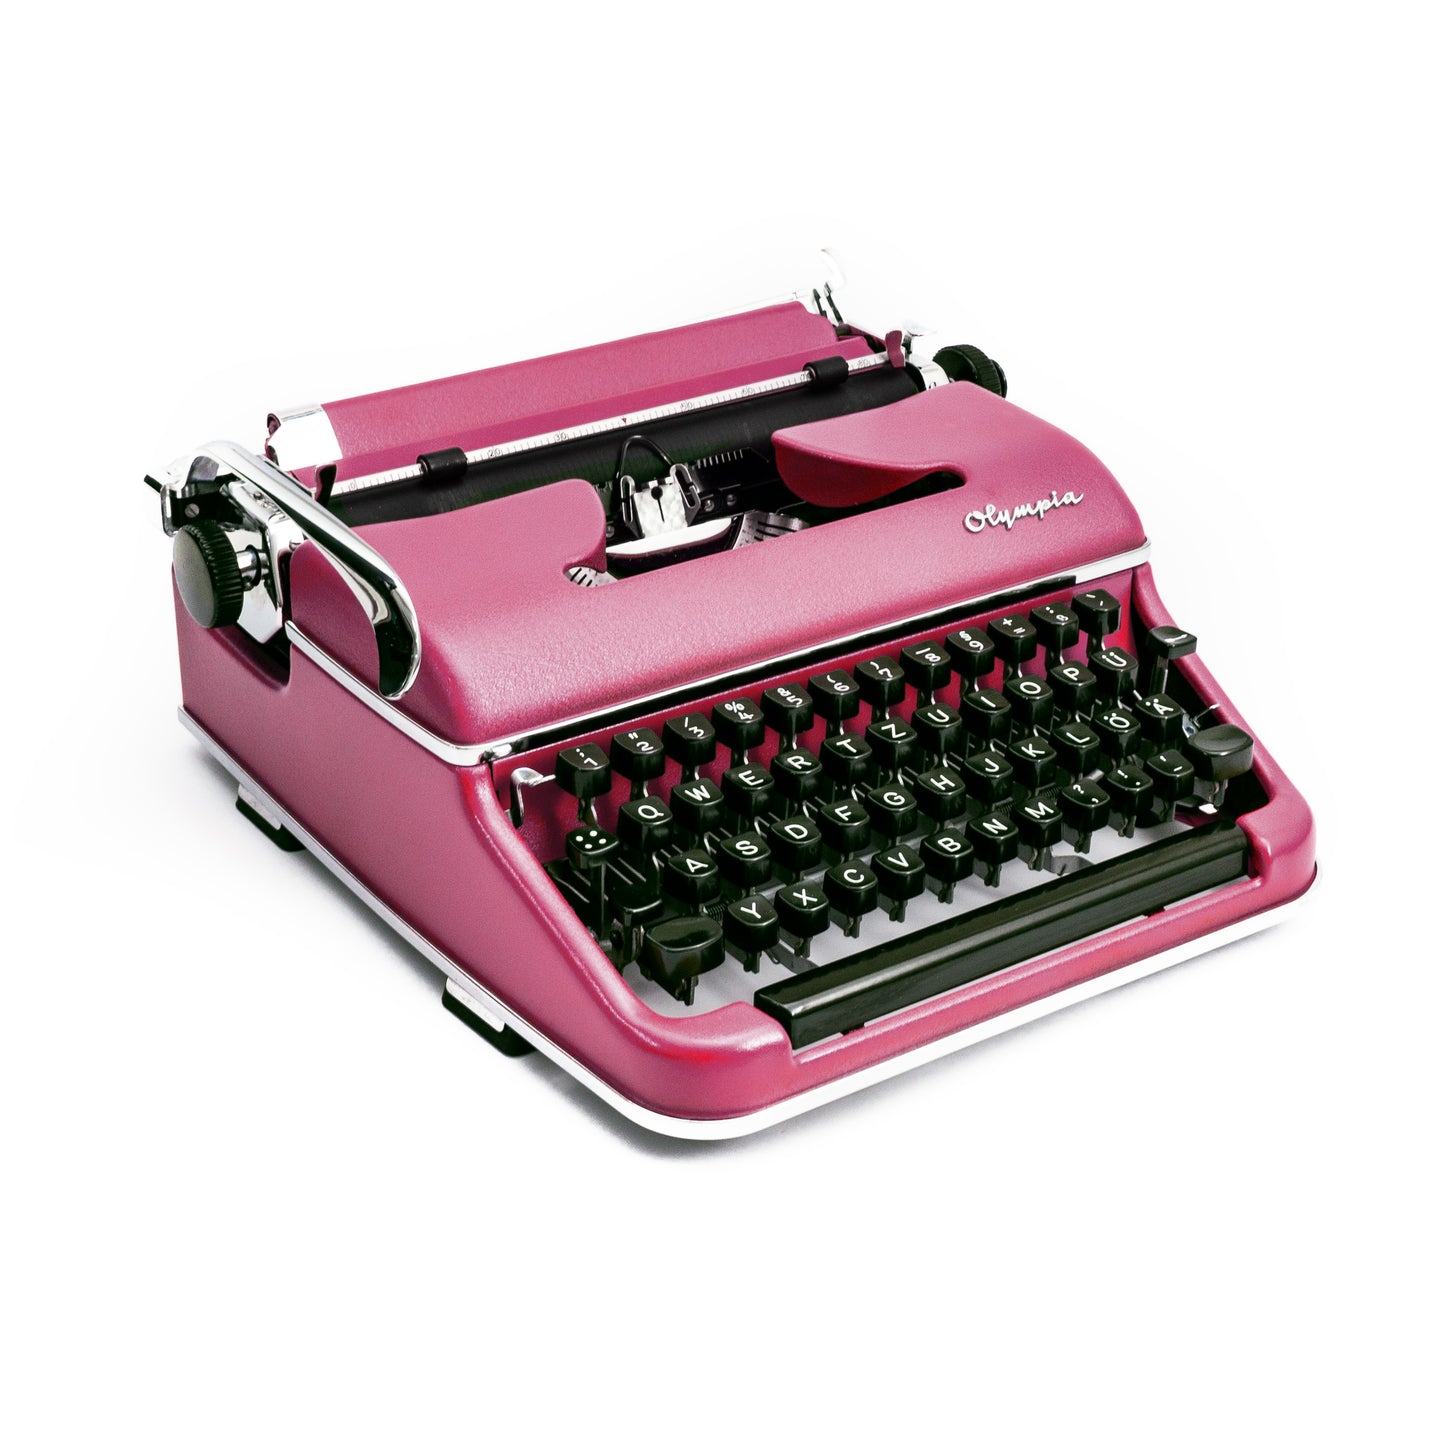 Vintage Typewriter Olympia SM2, Pink